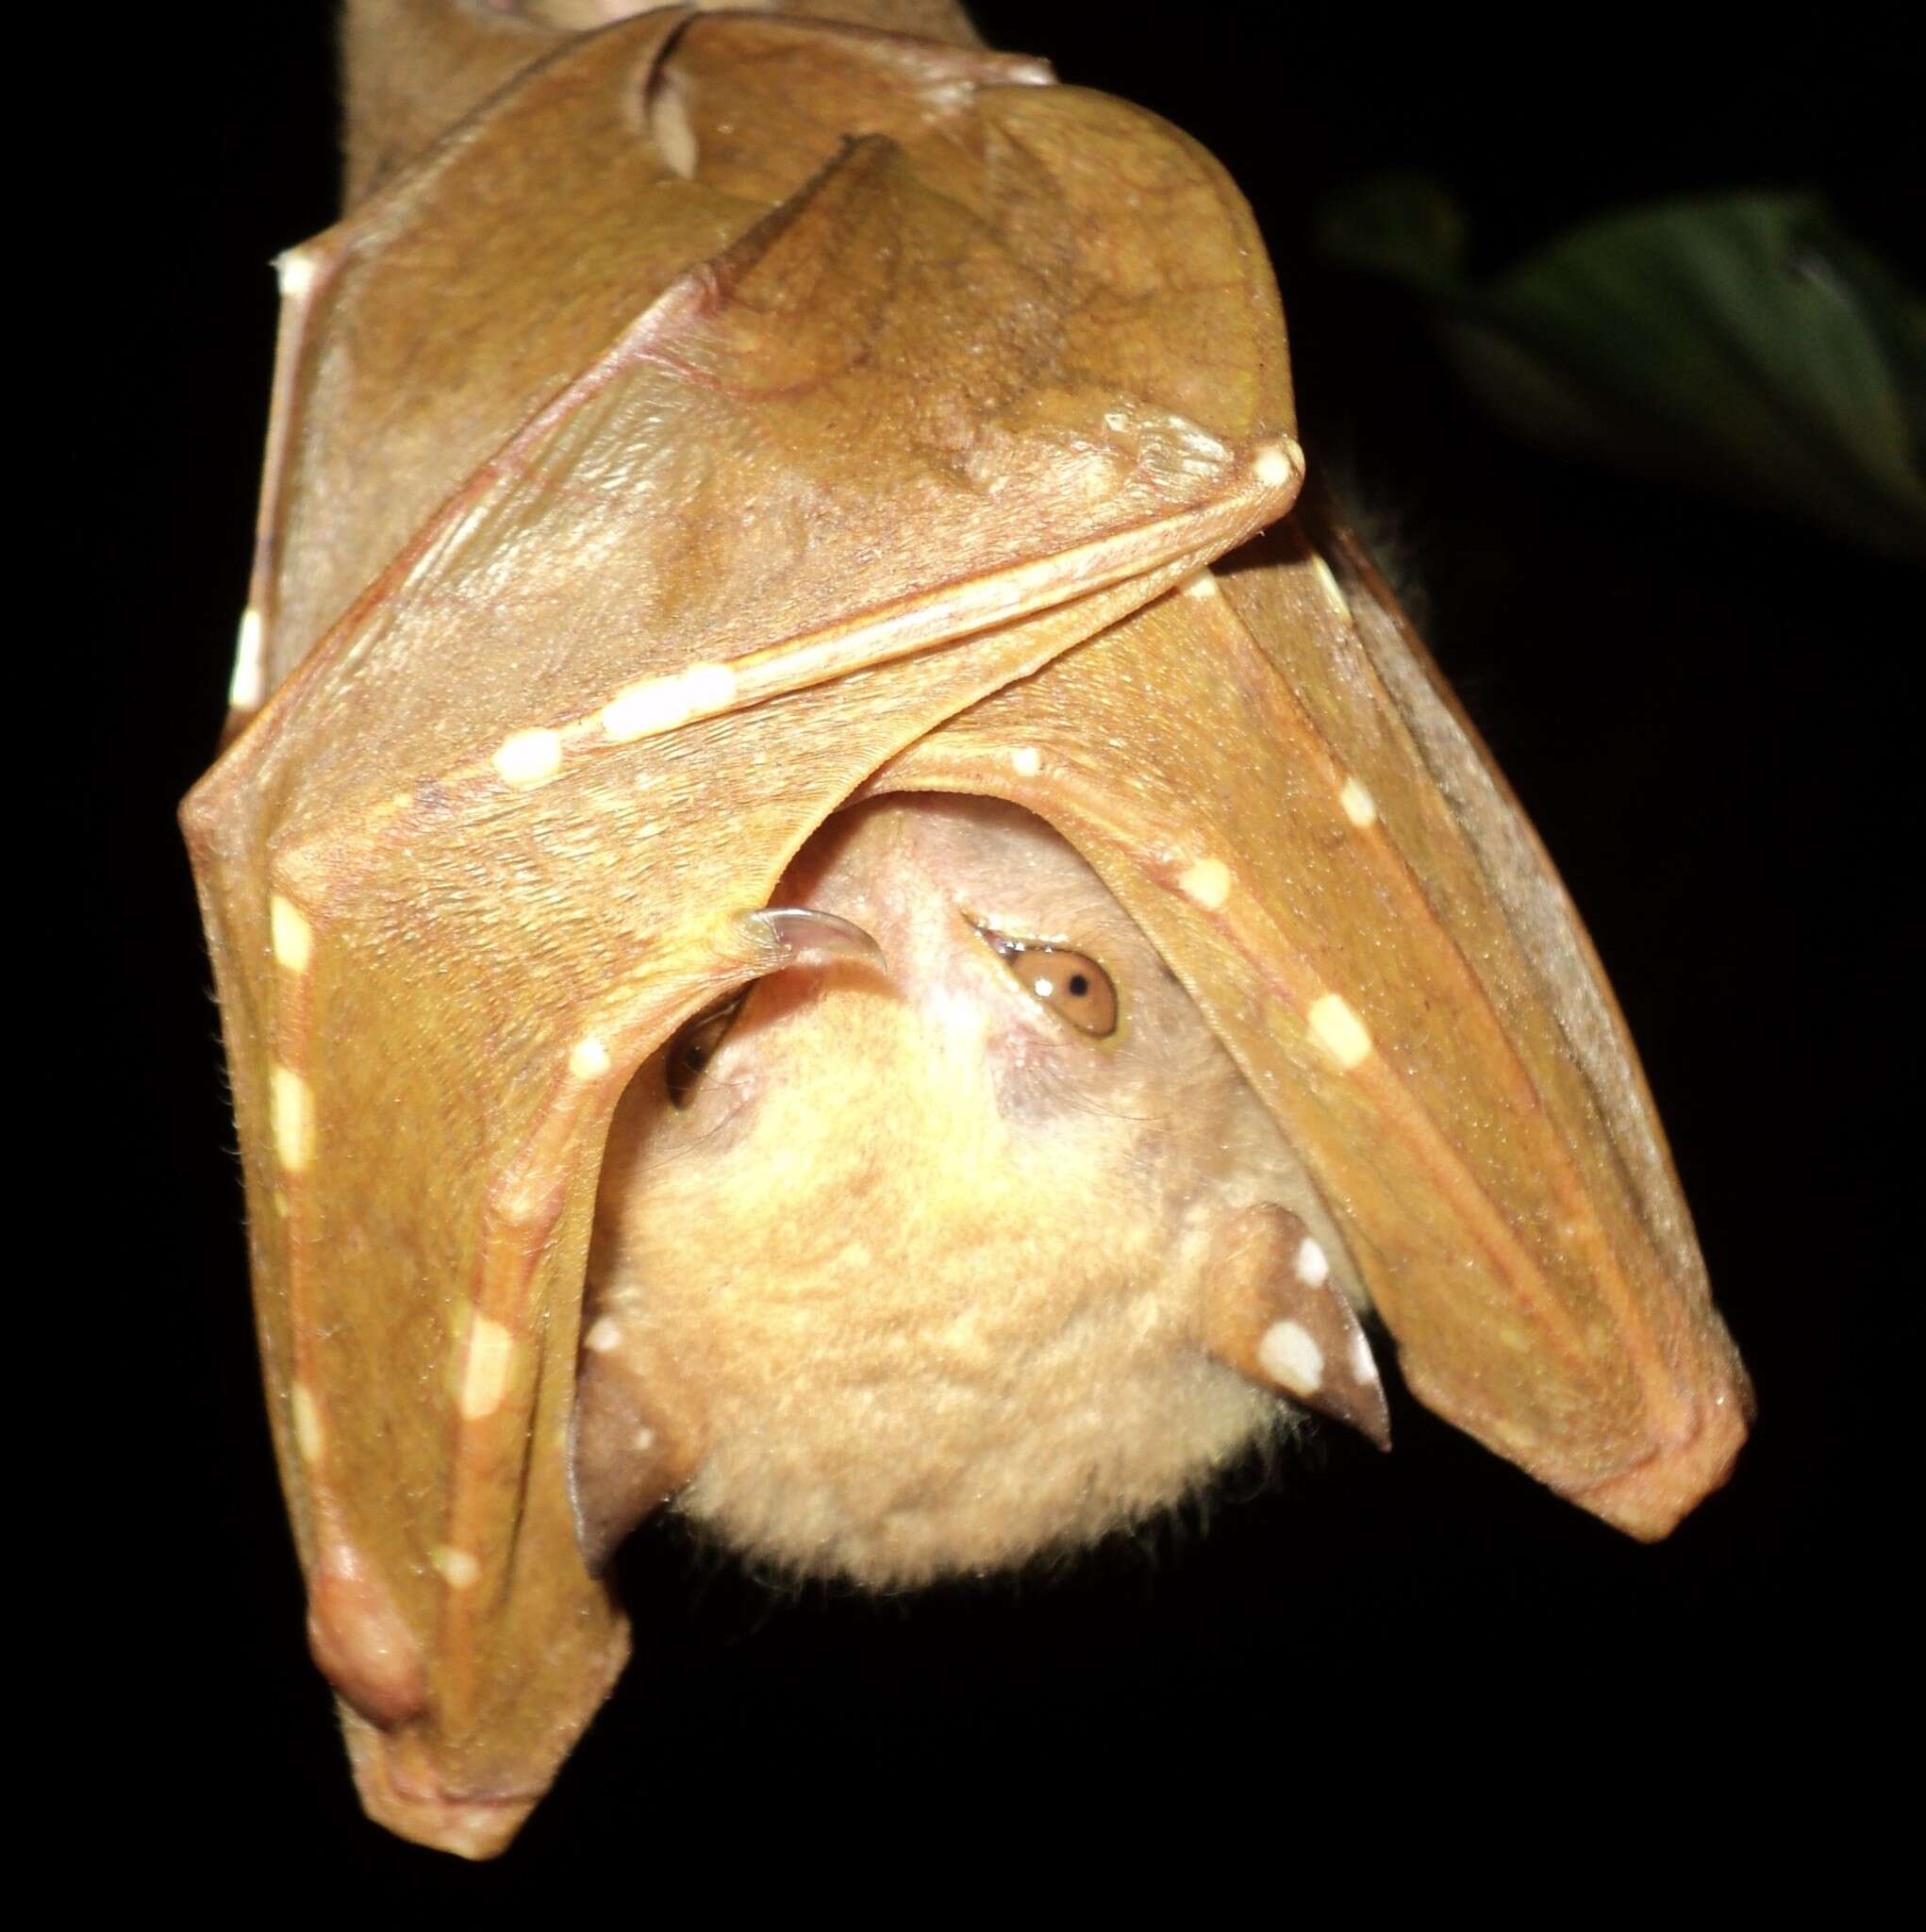 Image of Philippine Tube-nosed Fruit Bat